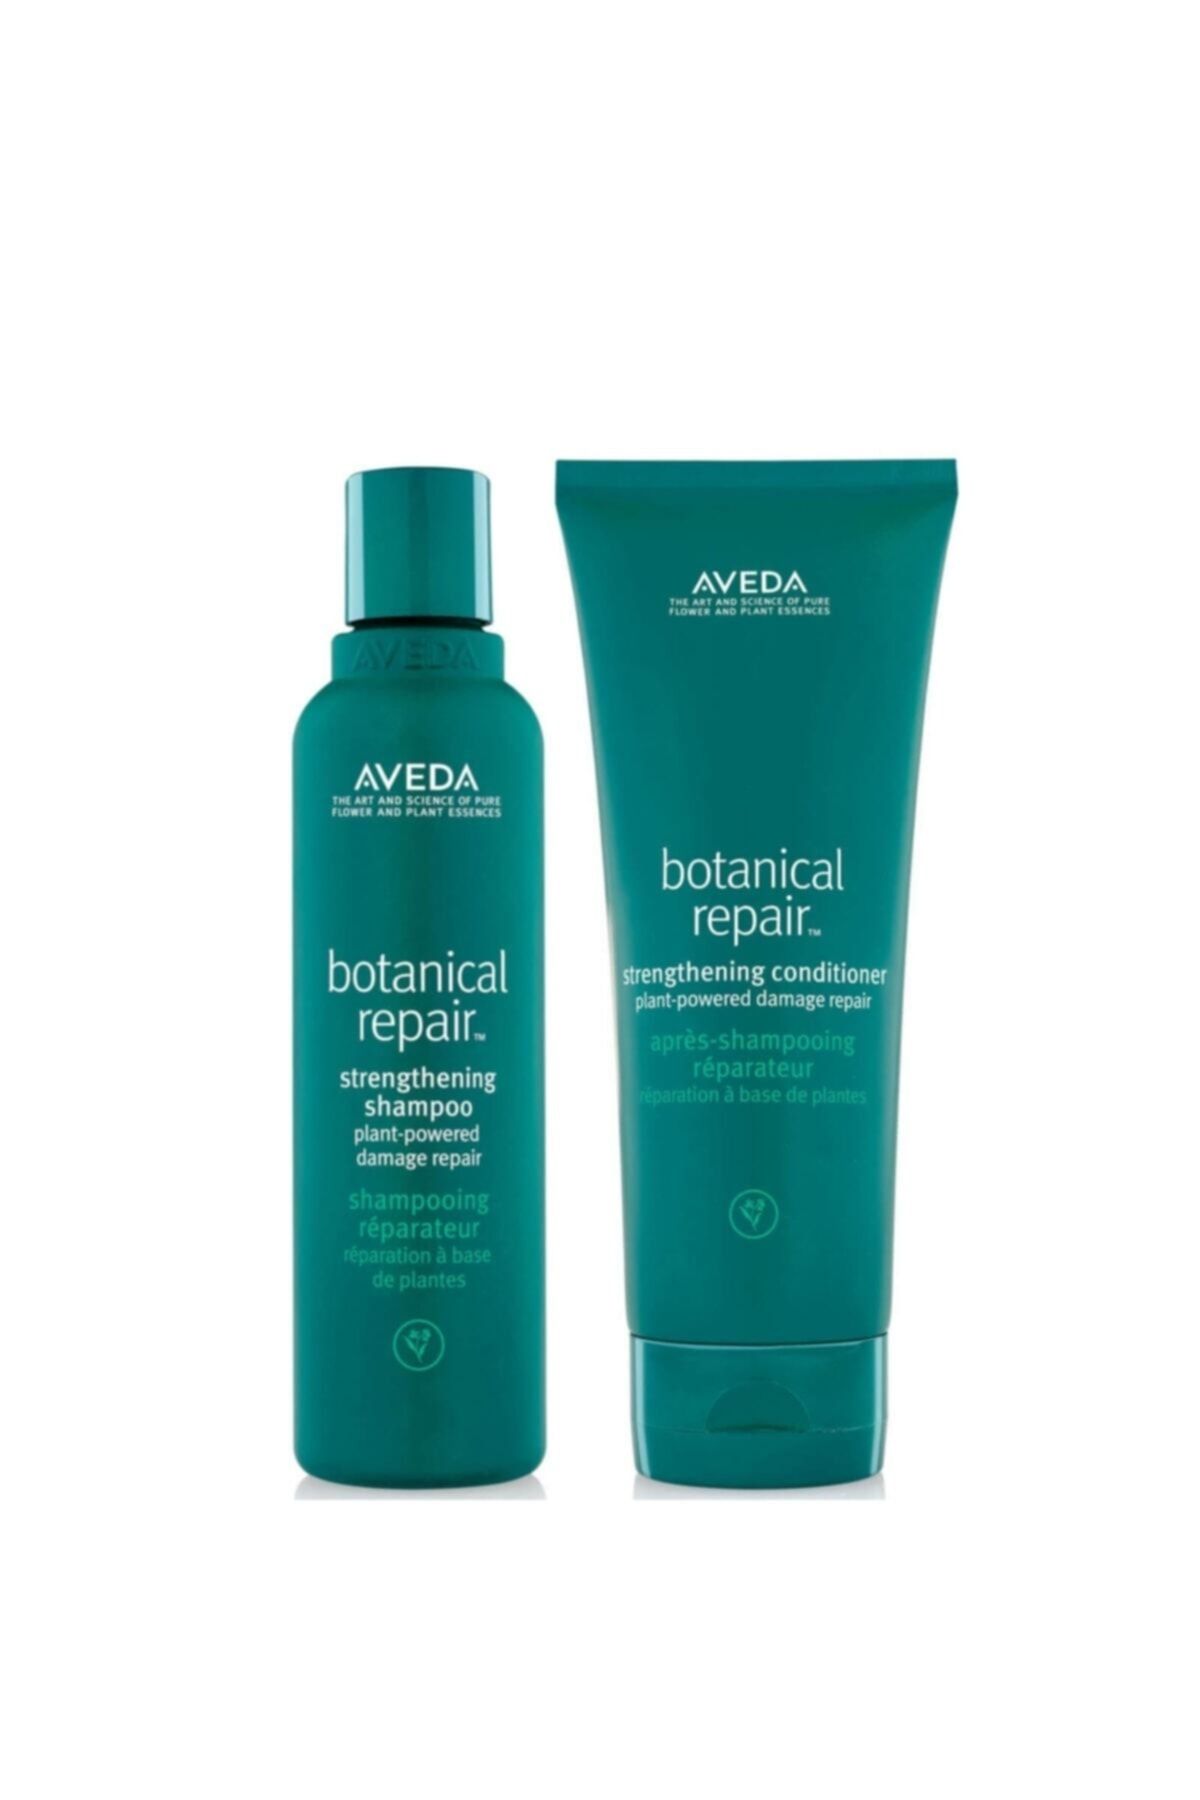 Aveda - Botanical Repair Yıpranmış Saçlar Için Şampuan 200ml+botanical Repair Krem 200ml